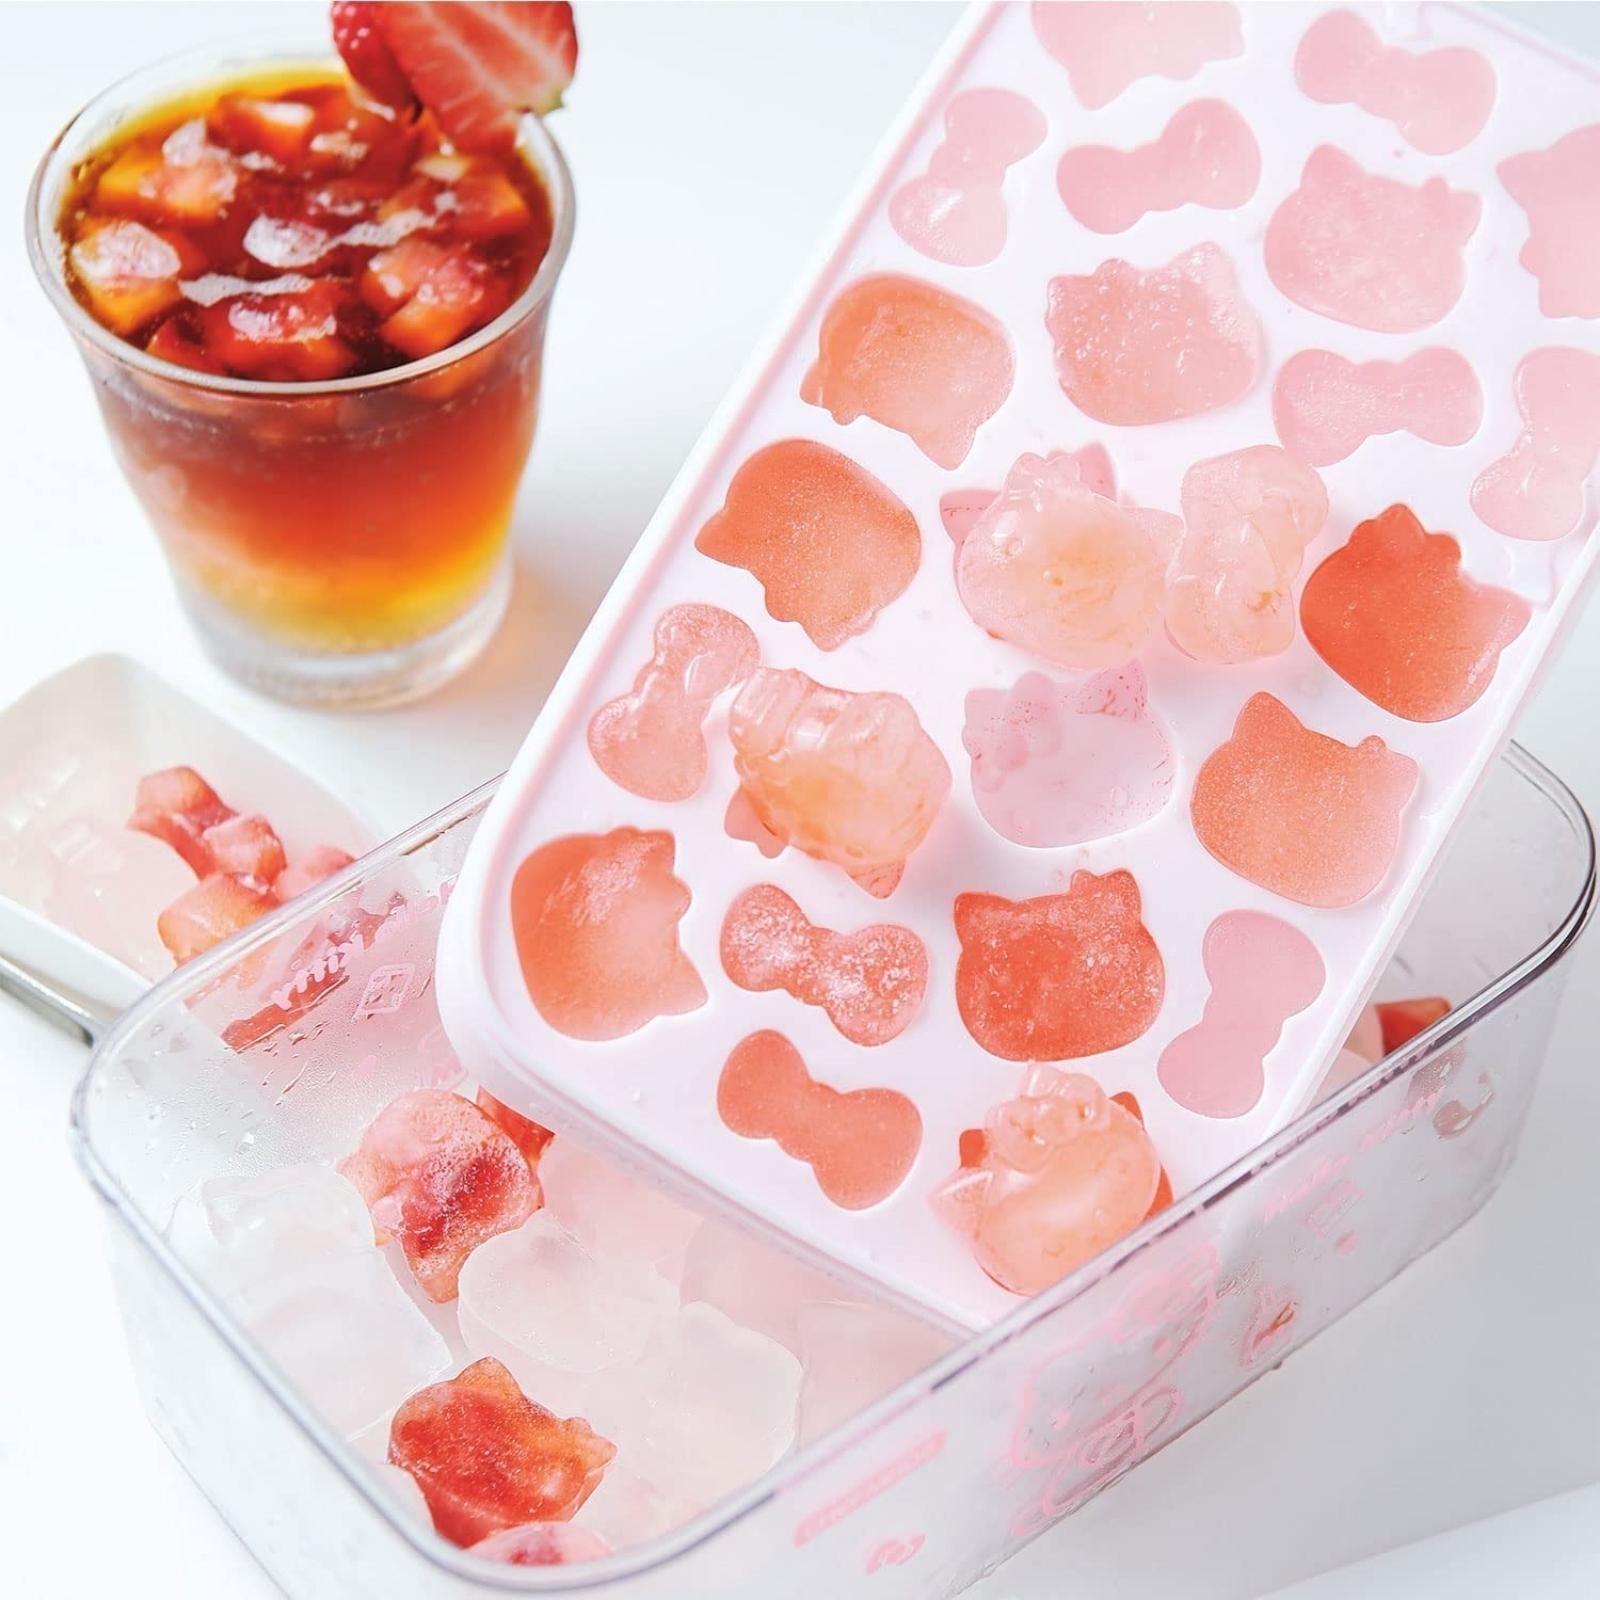 pink-weiß, Chefmade Silikon - mit Silikon Aufbewahrungsbox KITTY, Eisschaufel, Eiswürfelform Eisform und Aufbewahrungsbox Eiswürfelform Eiswürfelbereiter Deckel Eiswürfelbereiter), Eiswürfelform 220x140x110, HELLO Eisschaufel, mit (CHEFMADE,